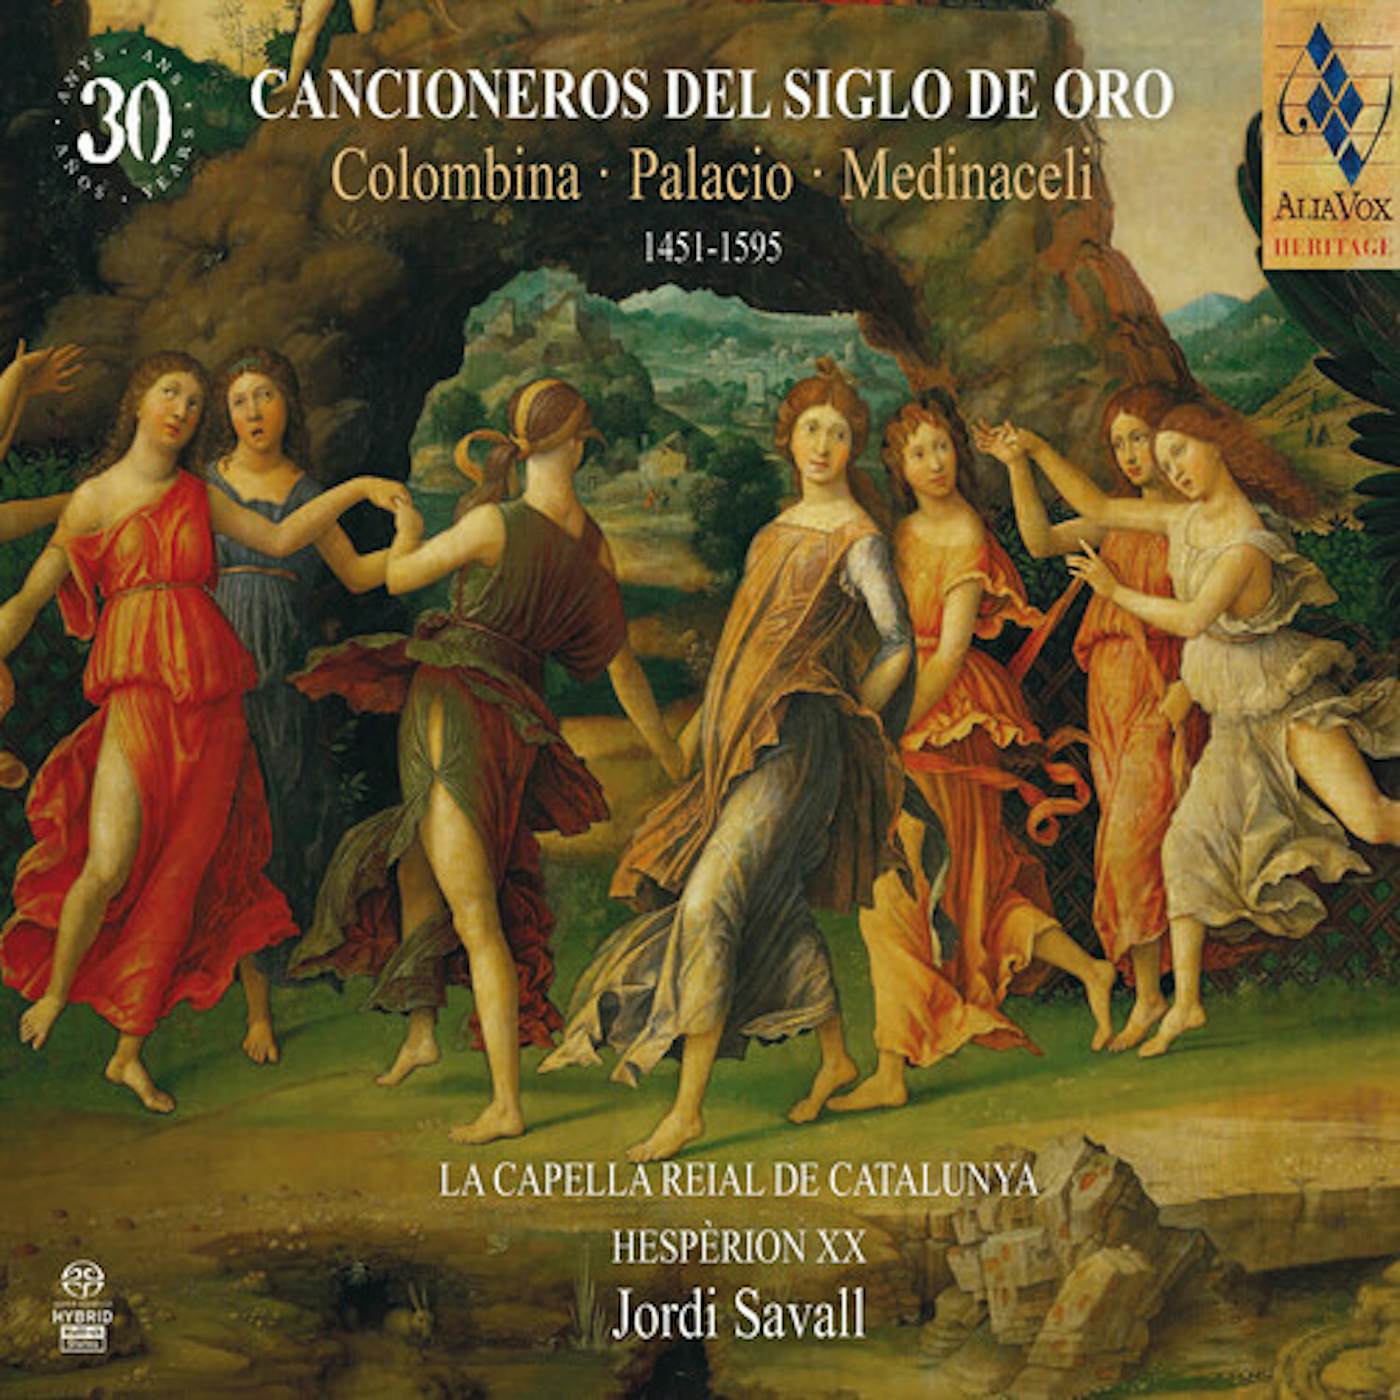 Jordi Savall CANCIONEROS DEL SIGLO DE ORO 1451-1595 CD